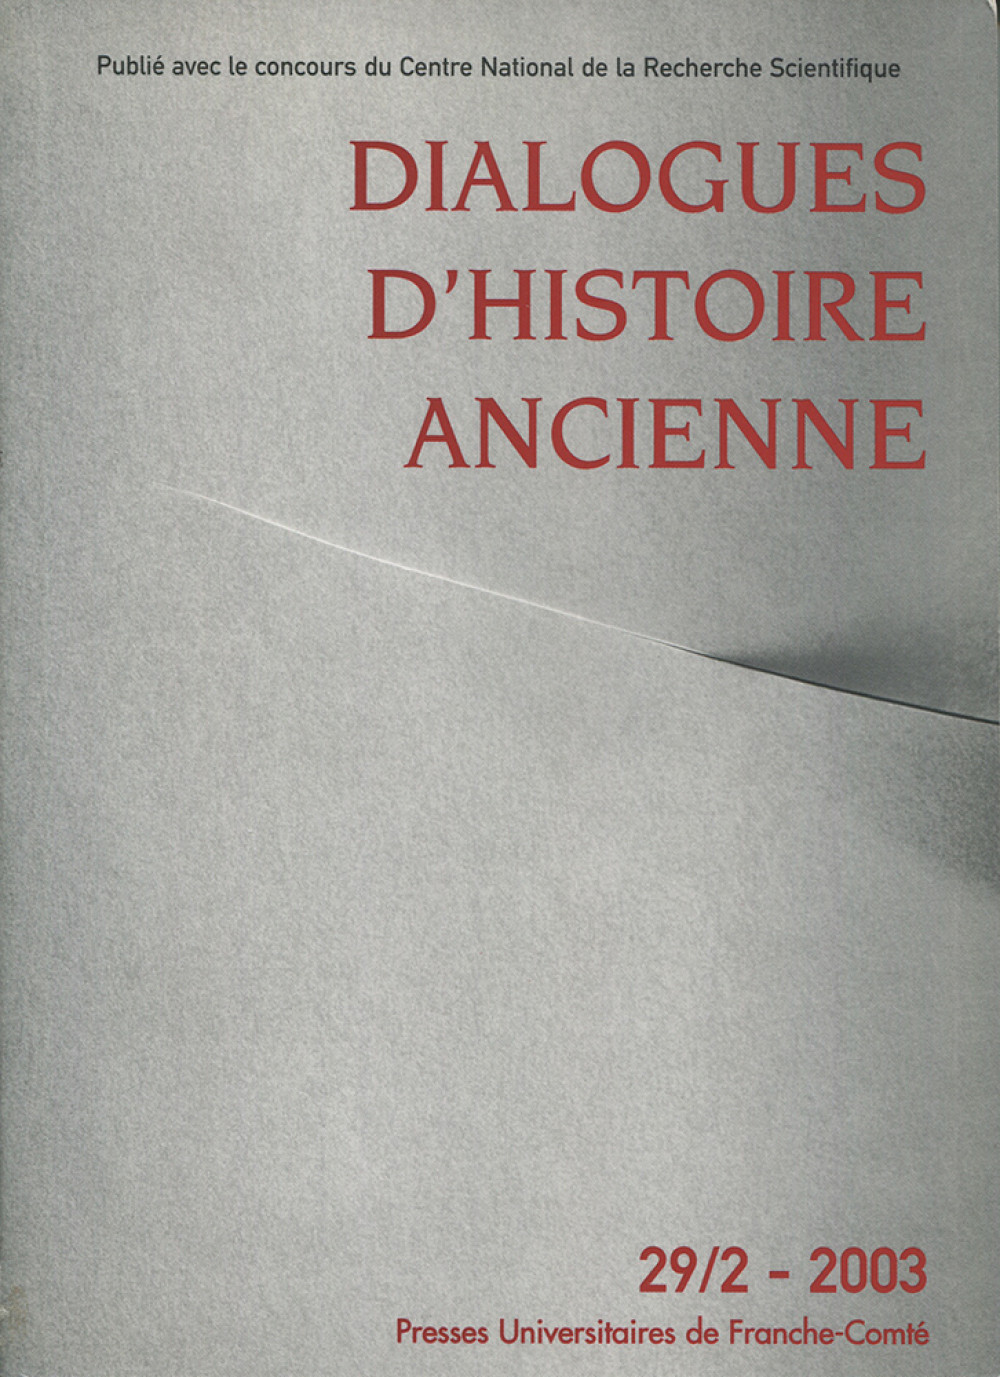 Dialogues d'Histoire Ancienne 29/2